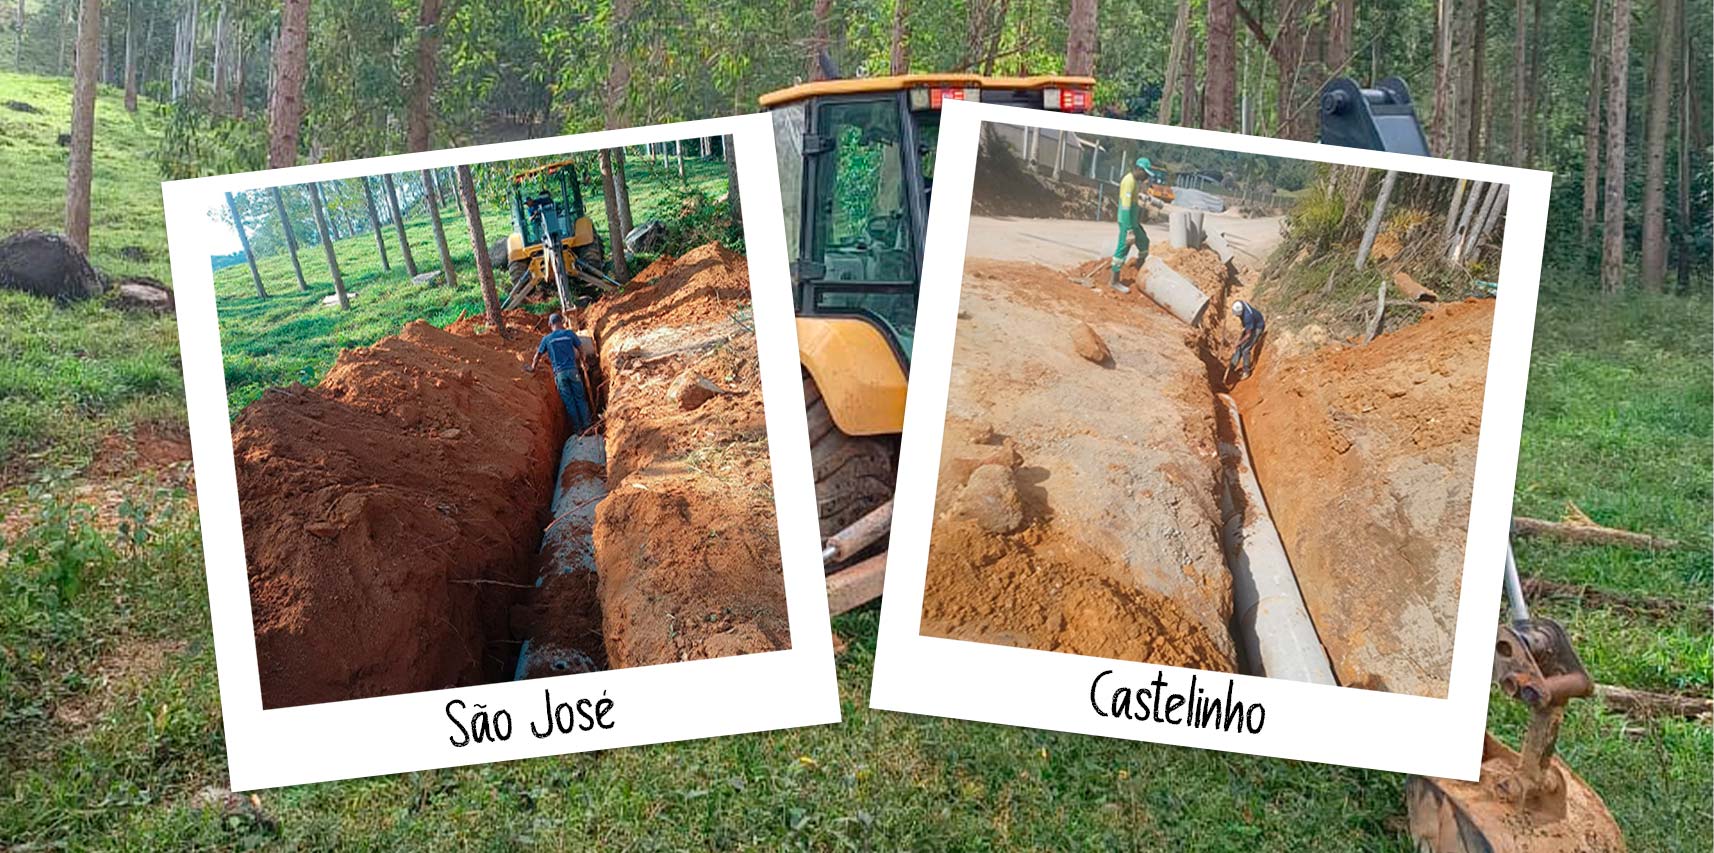 Instalação de bueiros melhora a infraestrutura das comunidades de Castelinho e São José em Vargem Alta